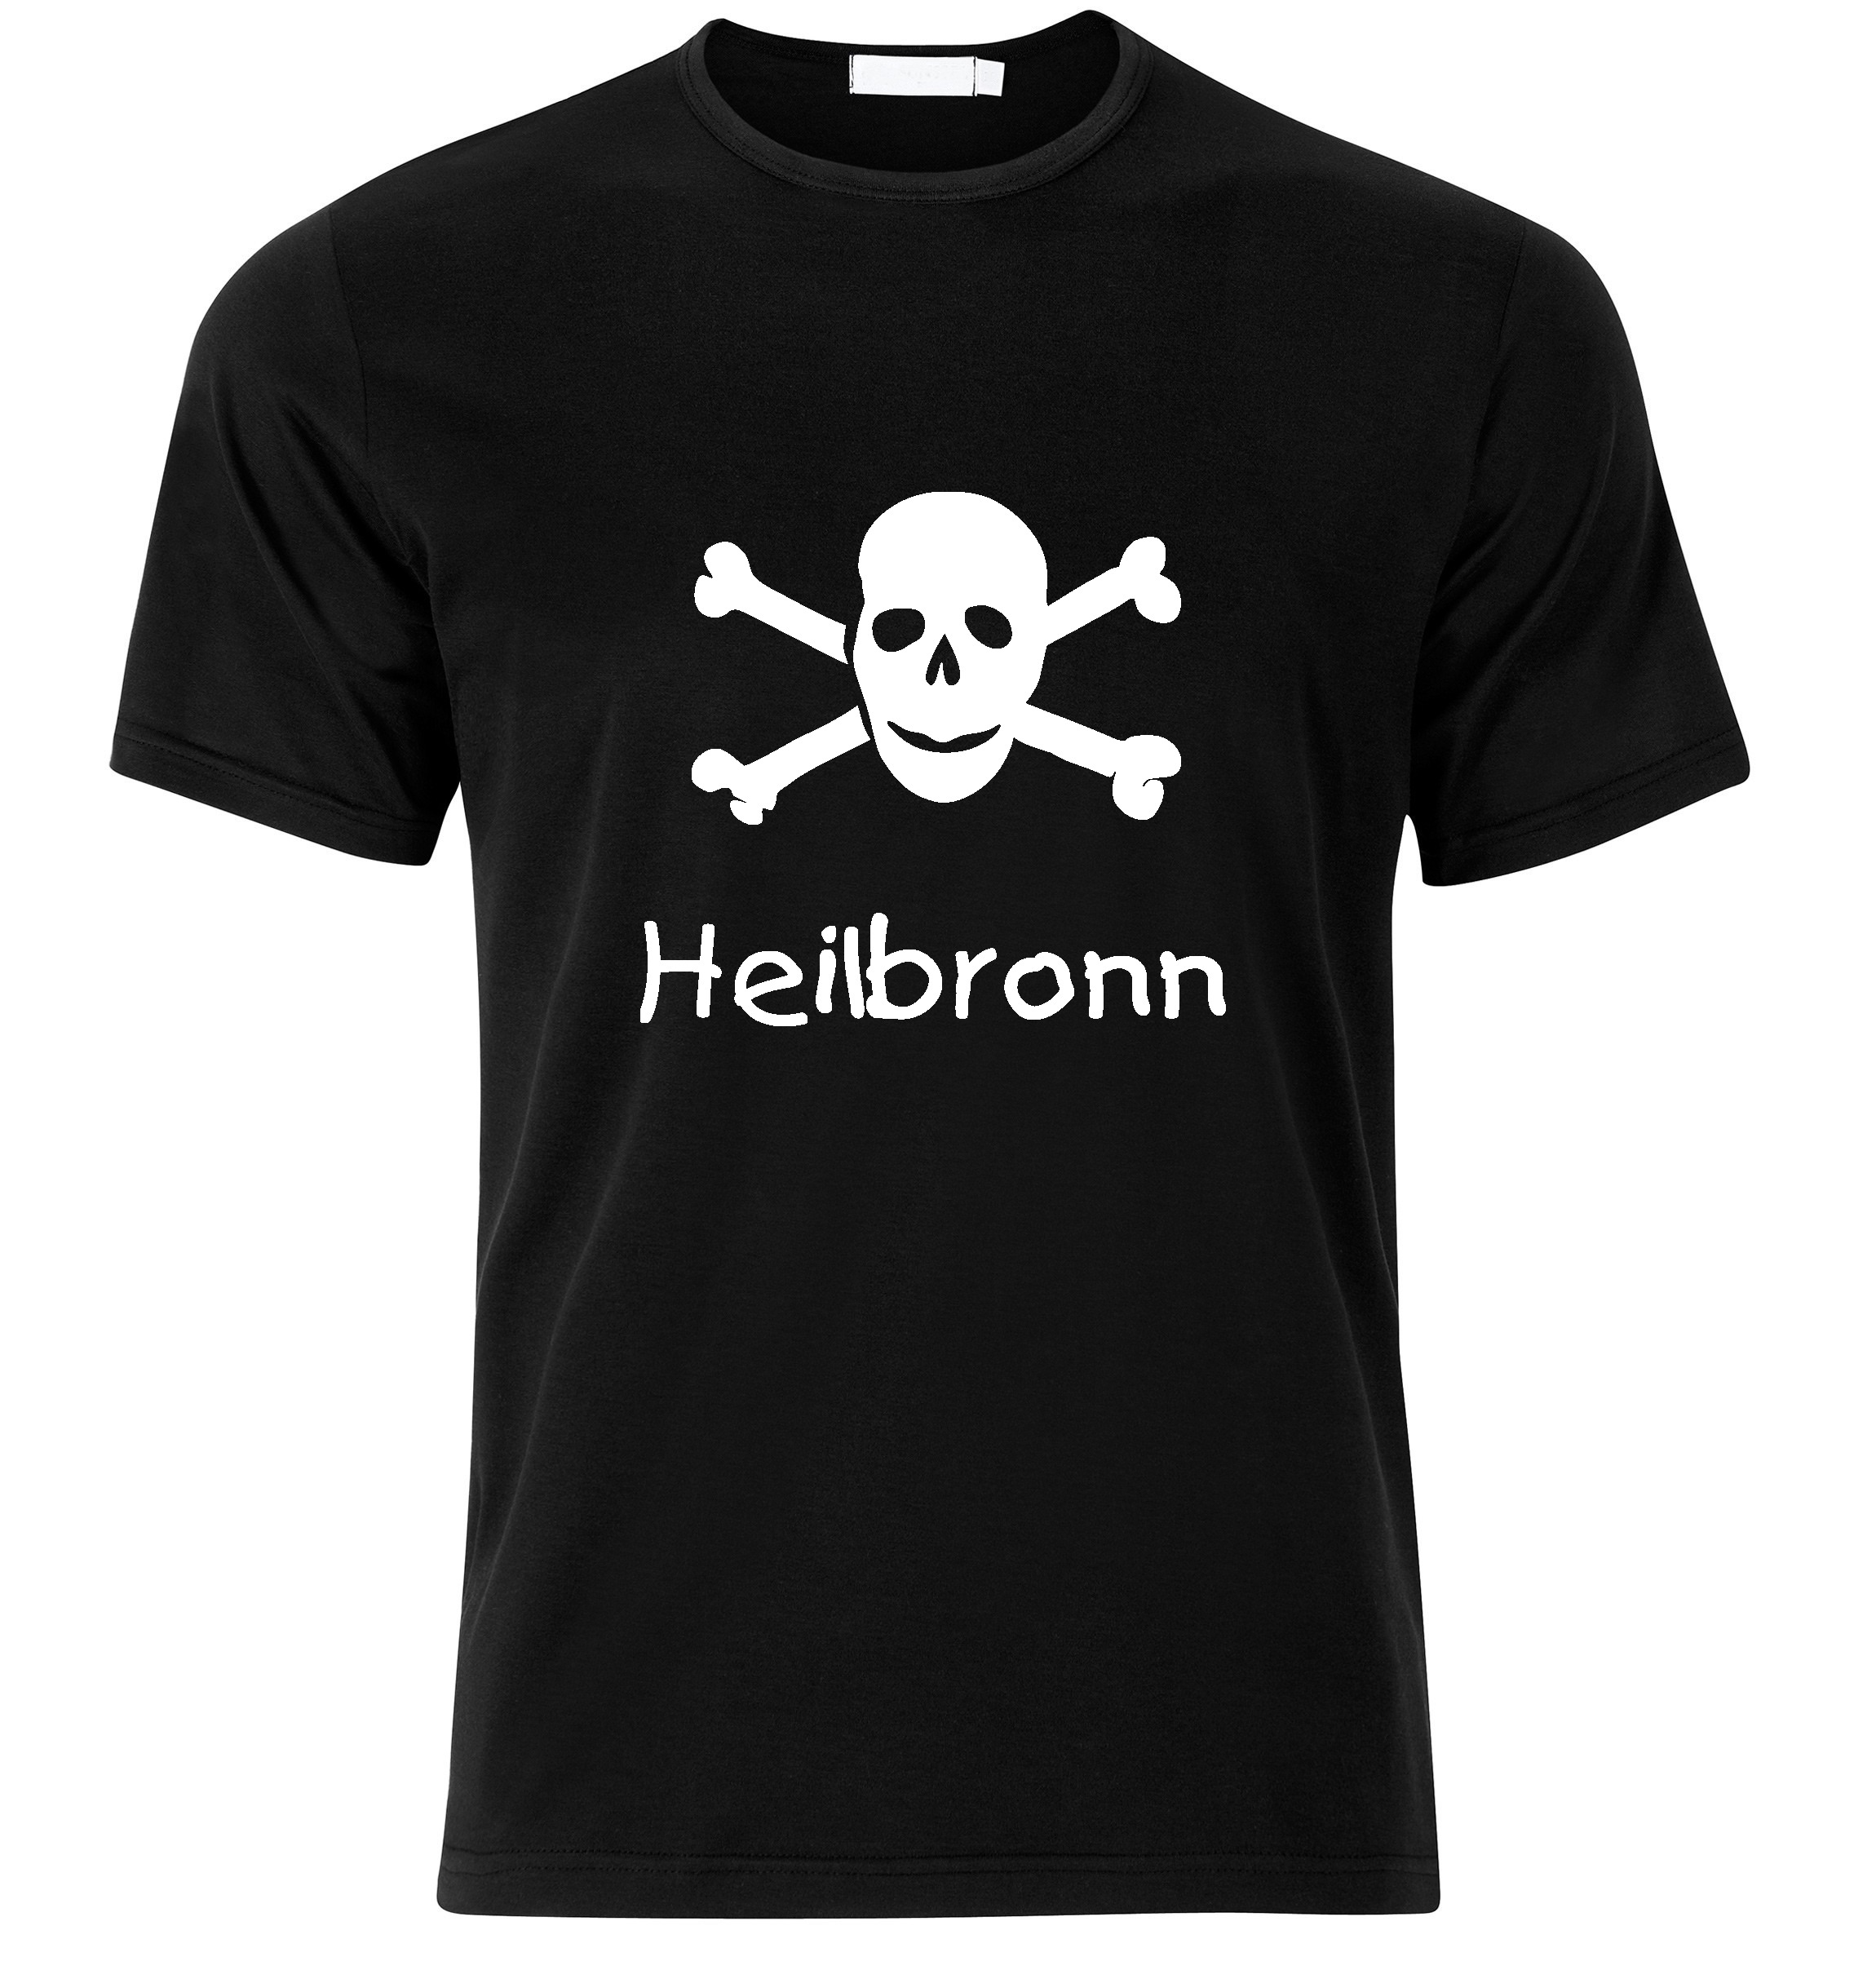 T-Shirt Heilbronn Jolly Roger, Totenkopf